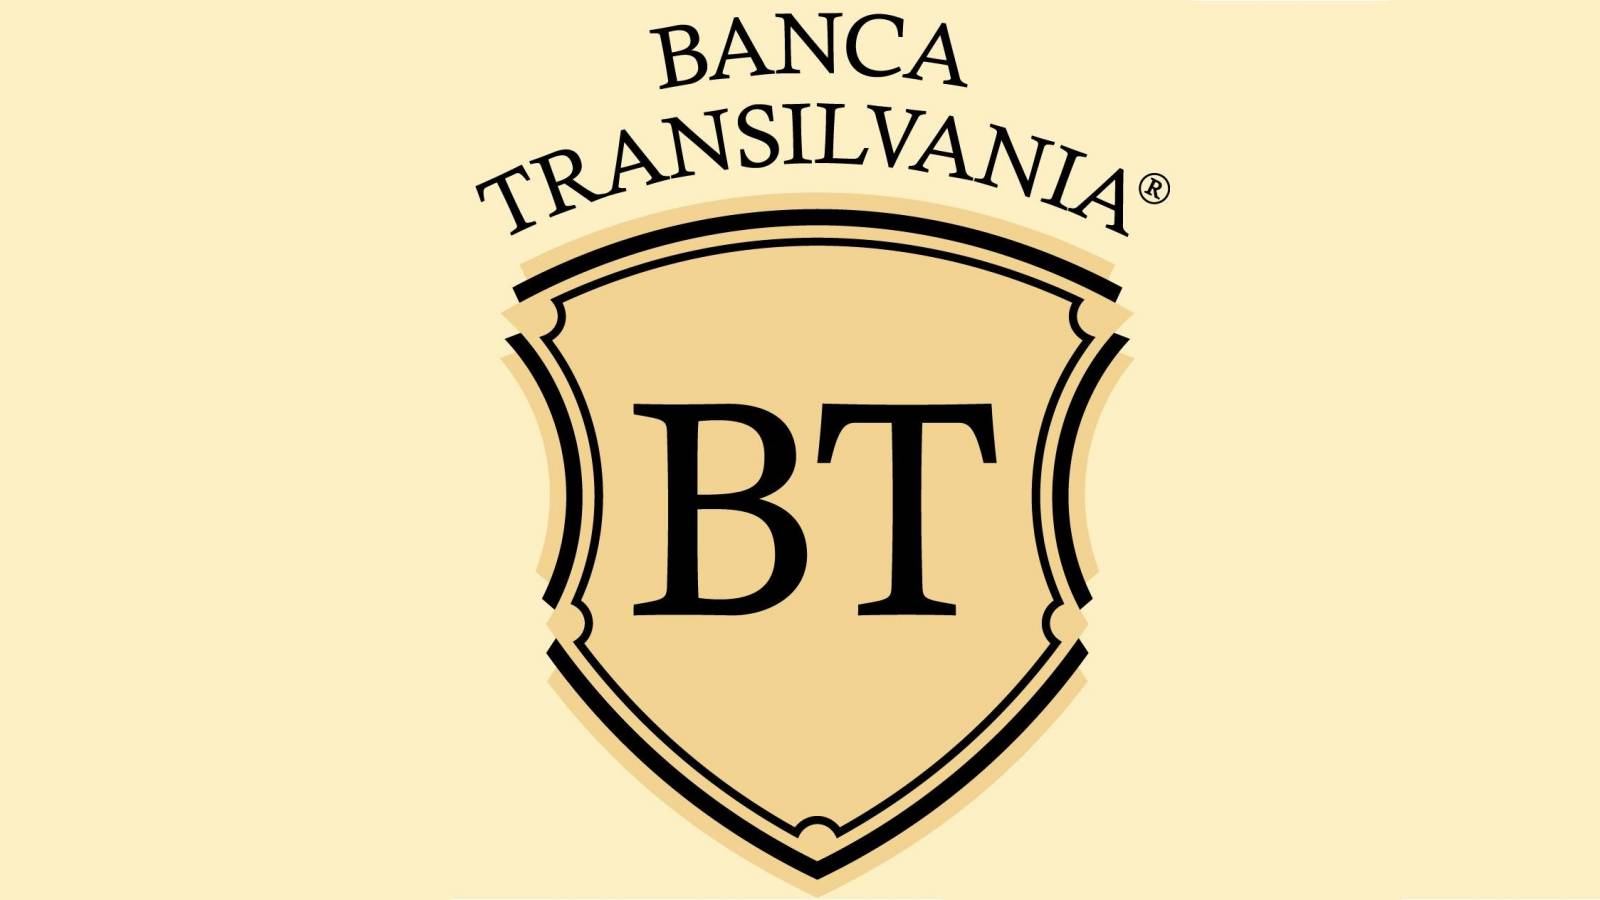 Clienti BANCA Transilvania ufficialmente informati Sì, paga gratis oggi